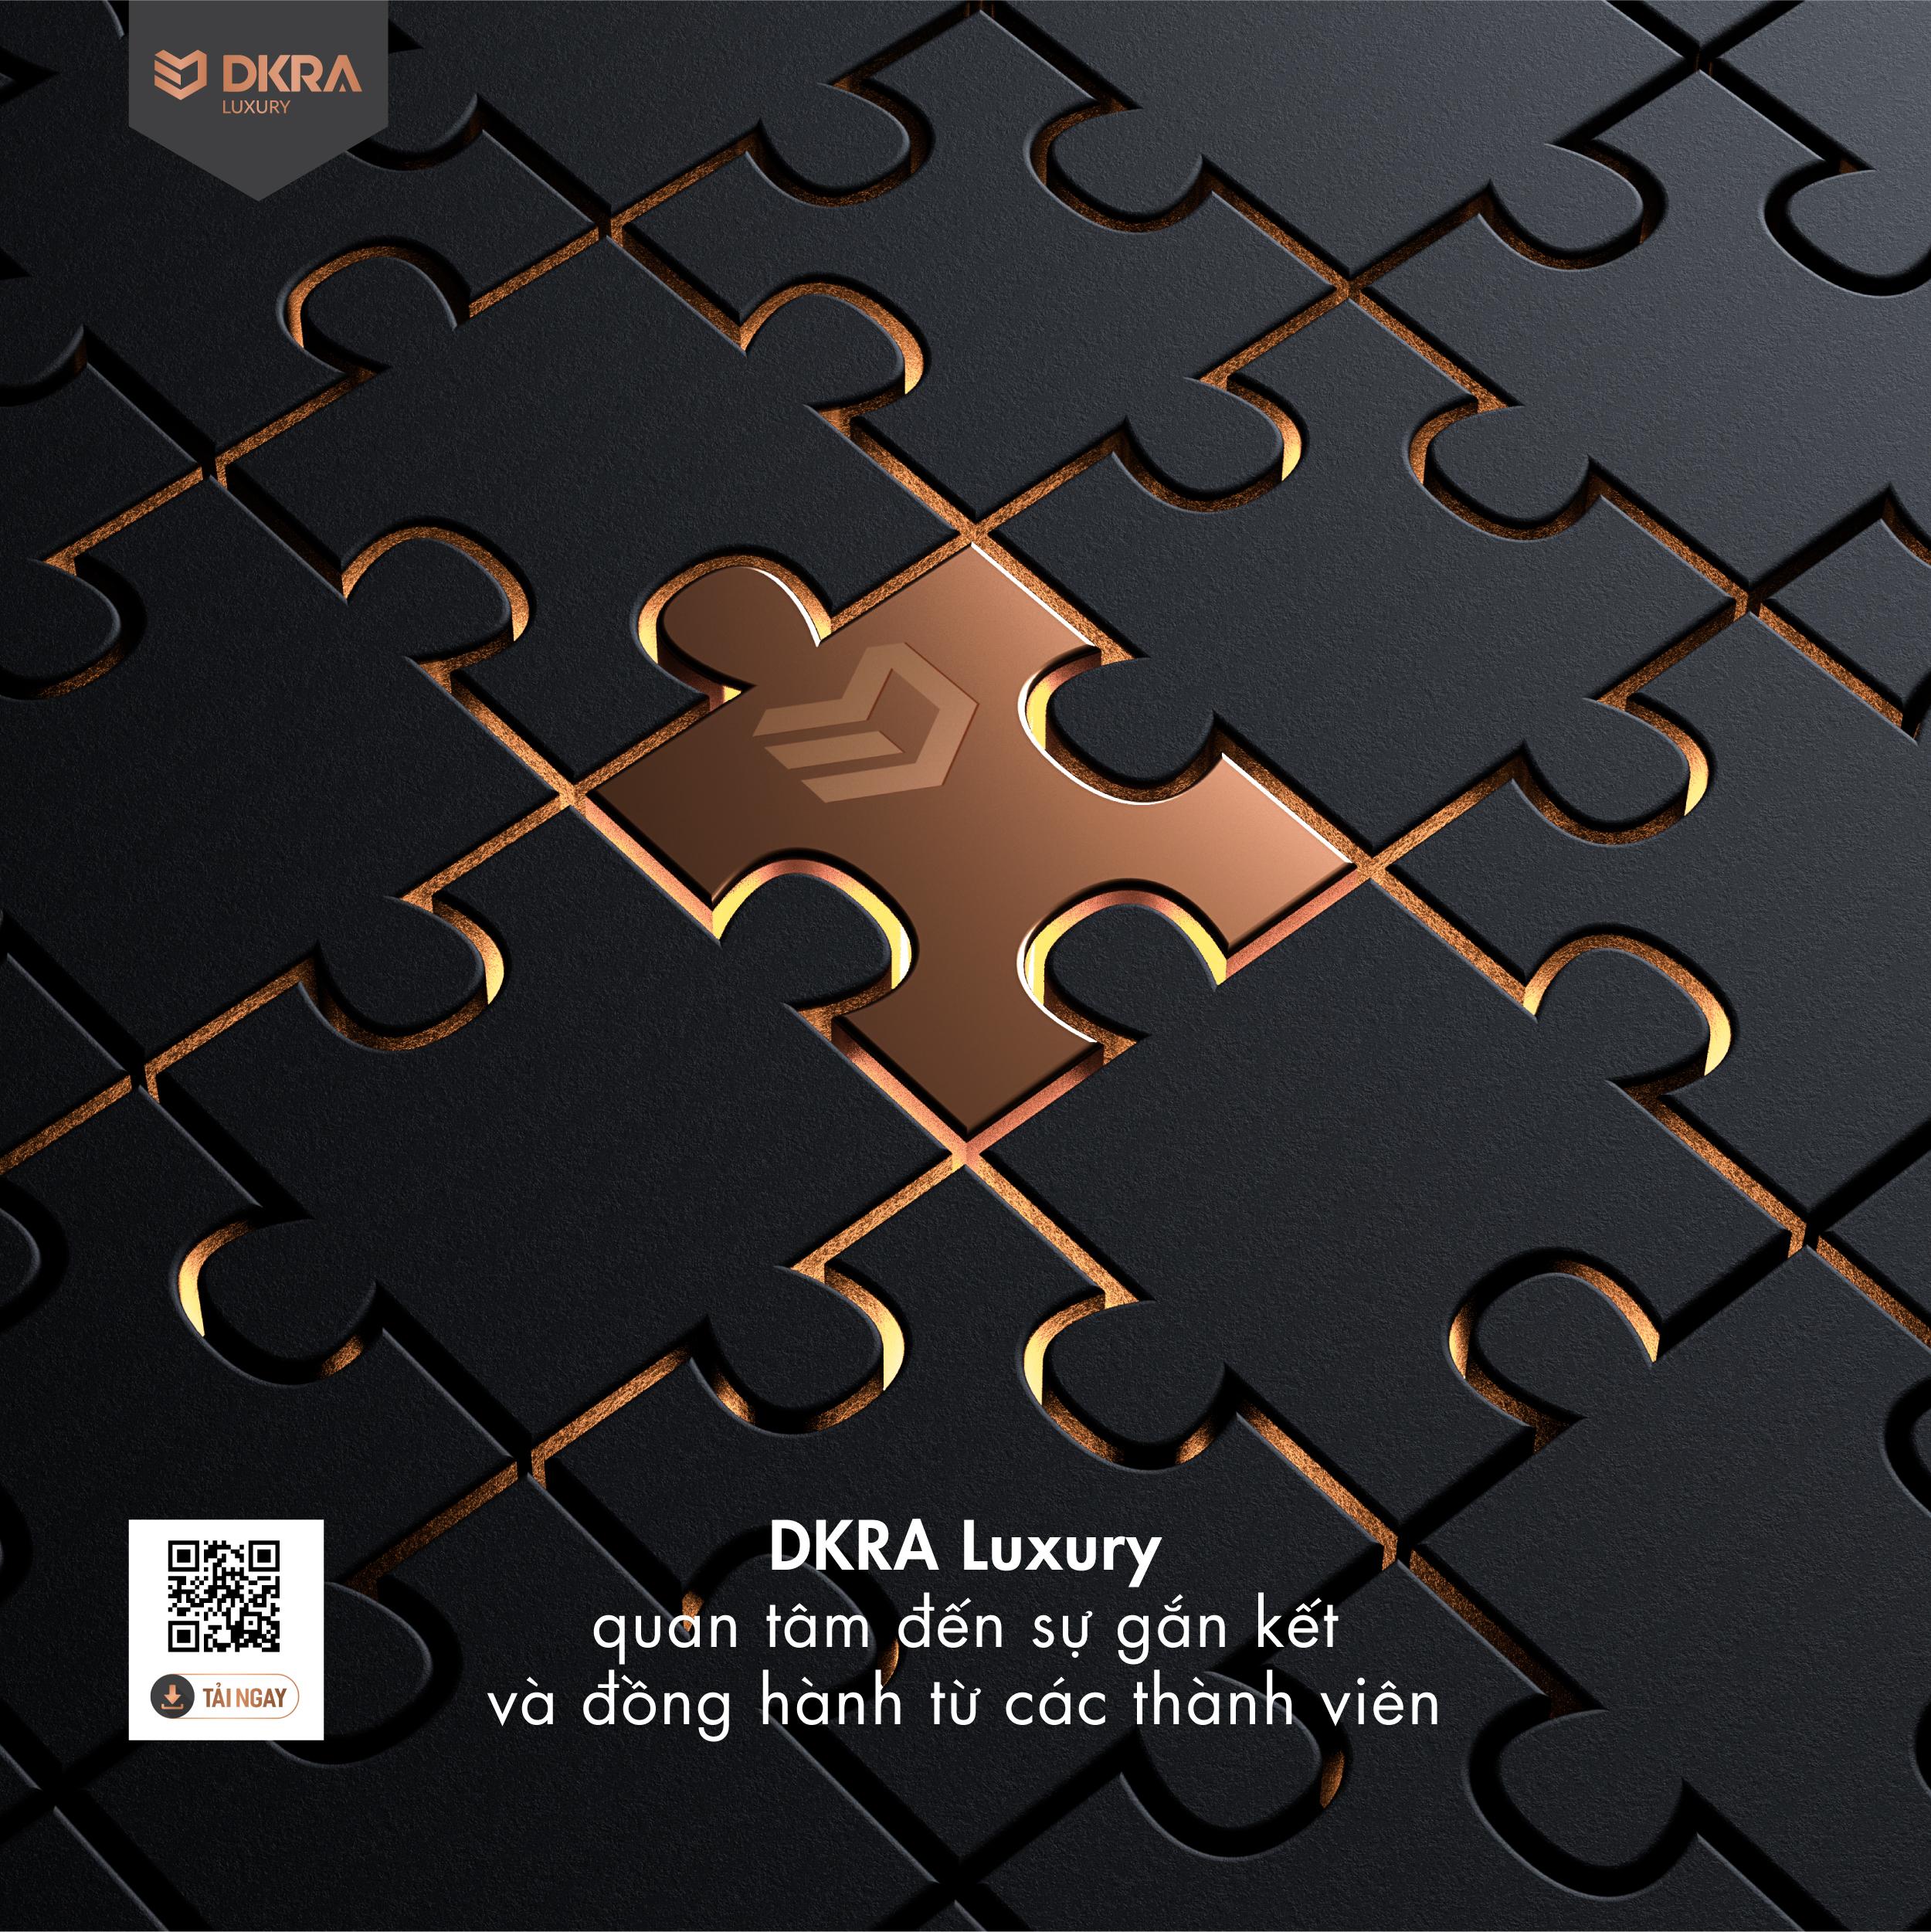 DKRA Luxury quan tâm đến sự gắn kết và đồng hành từ các thành viên